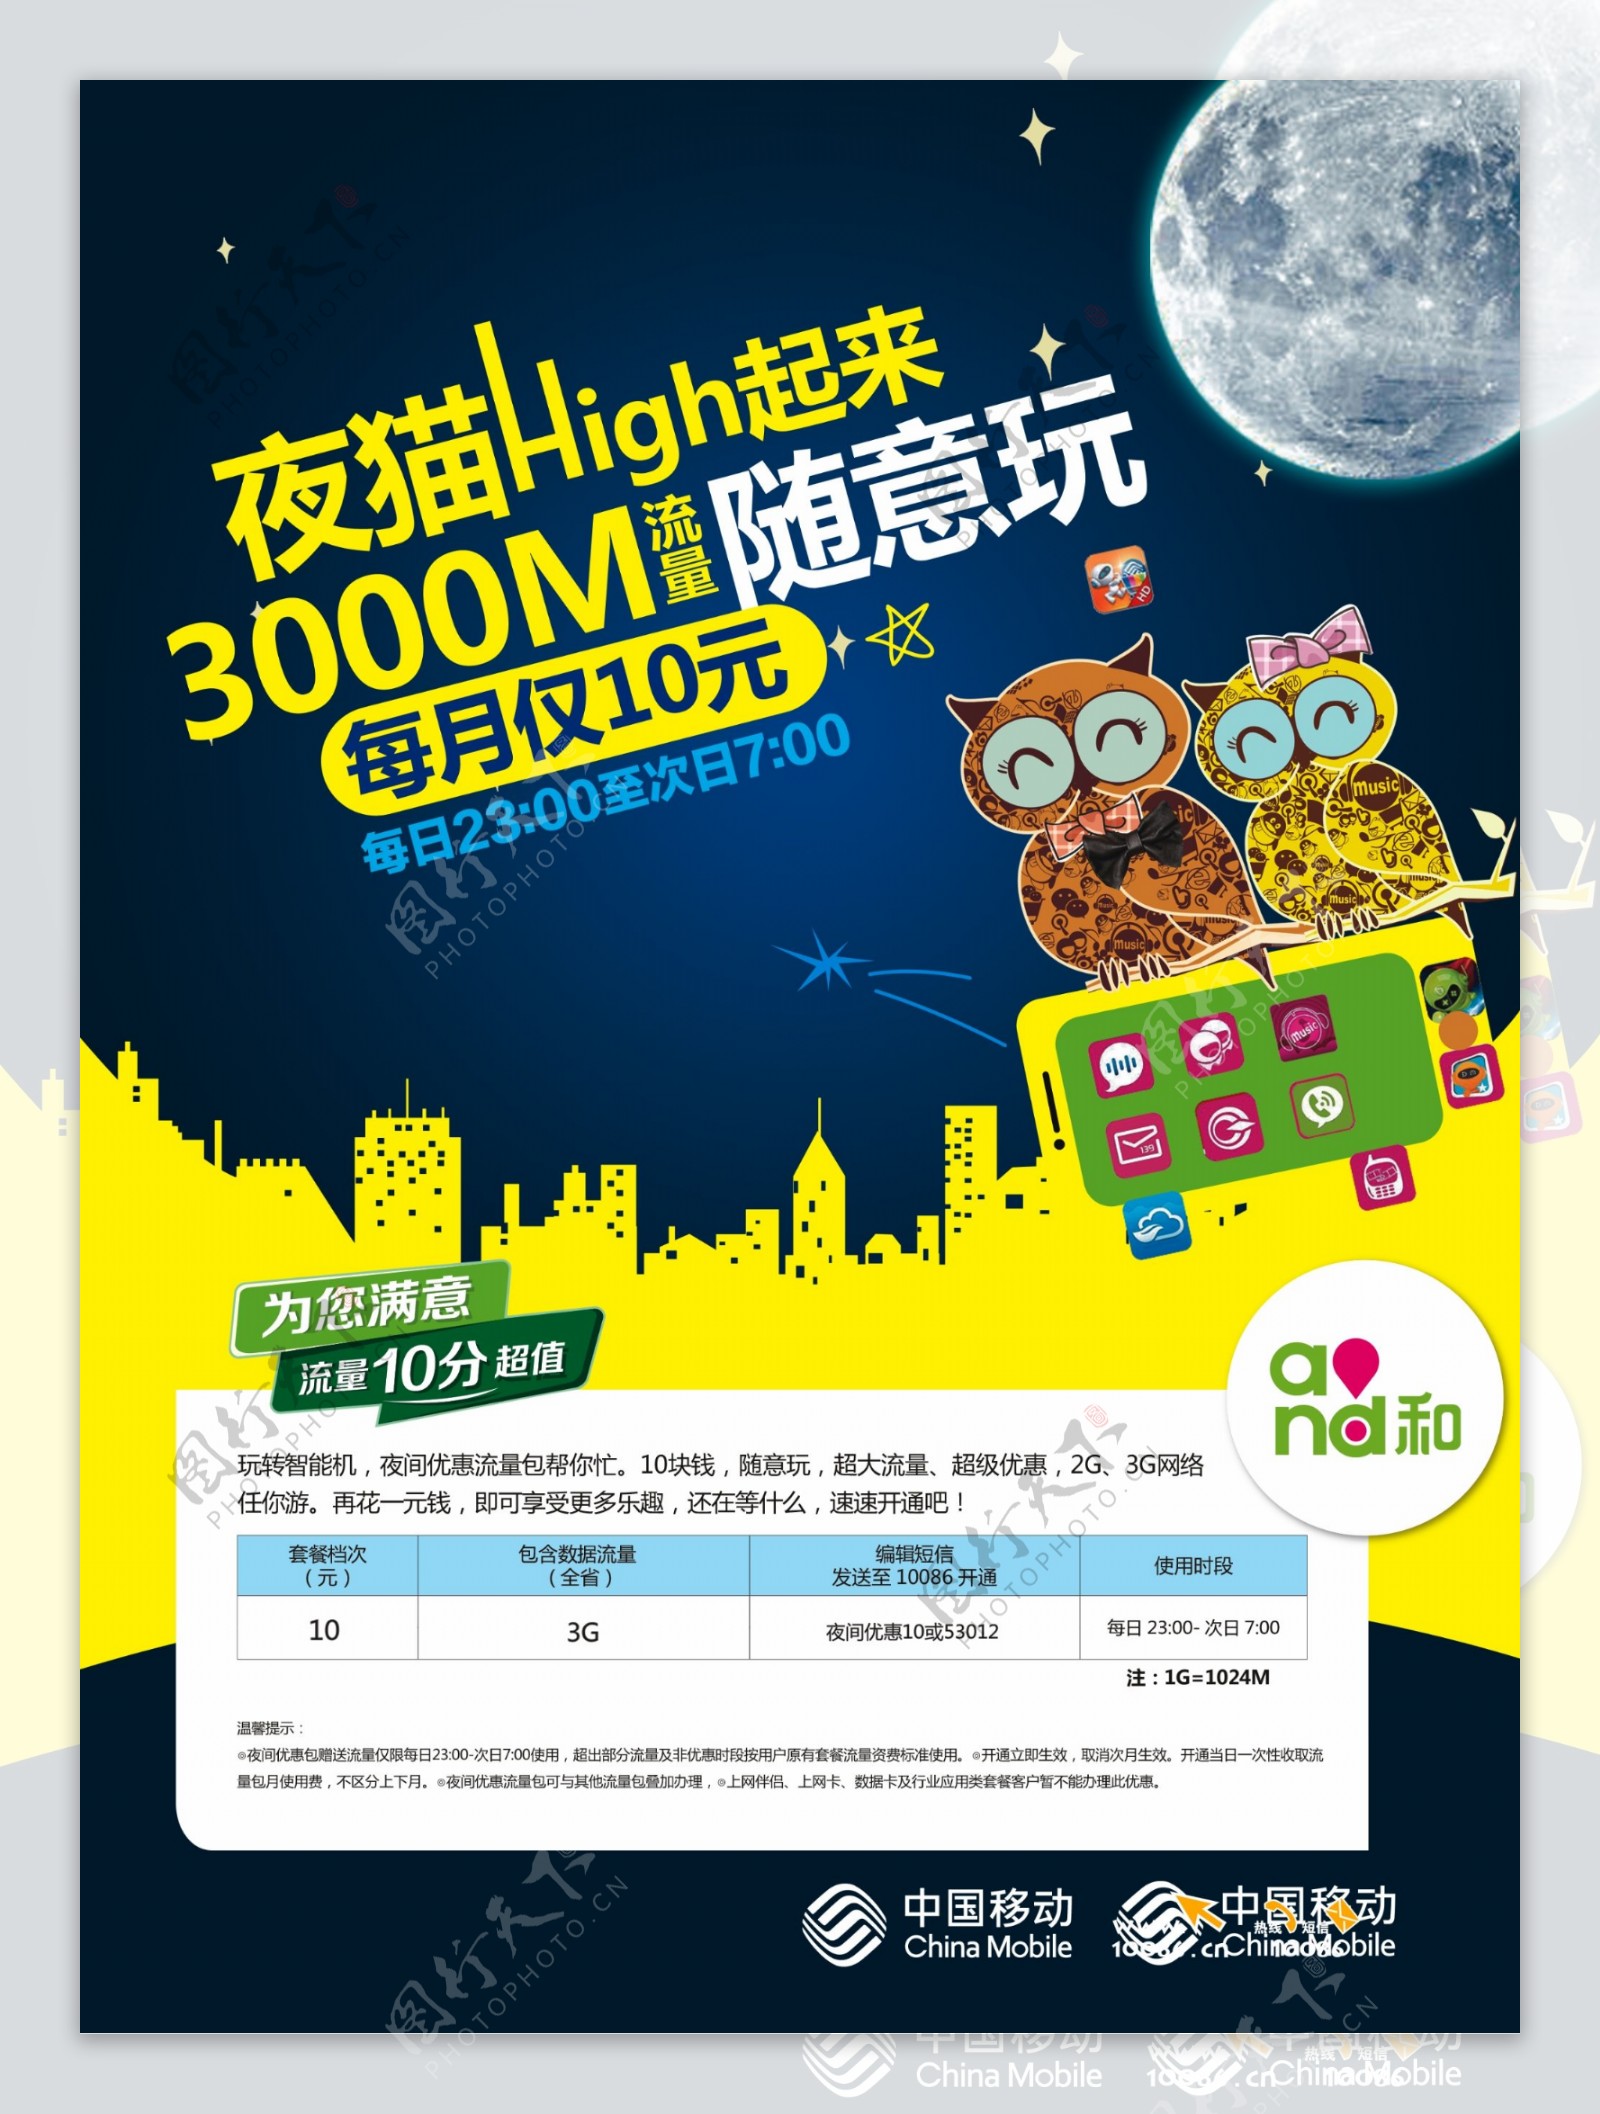 中国移动活动宣传海报设计